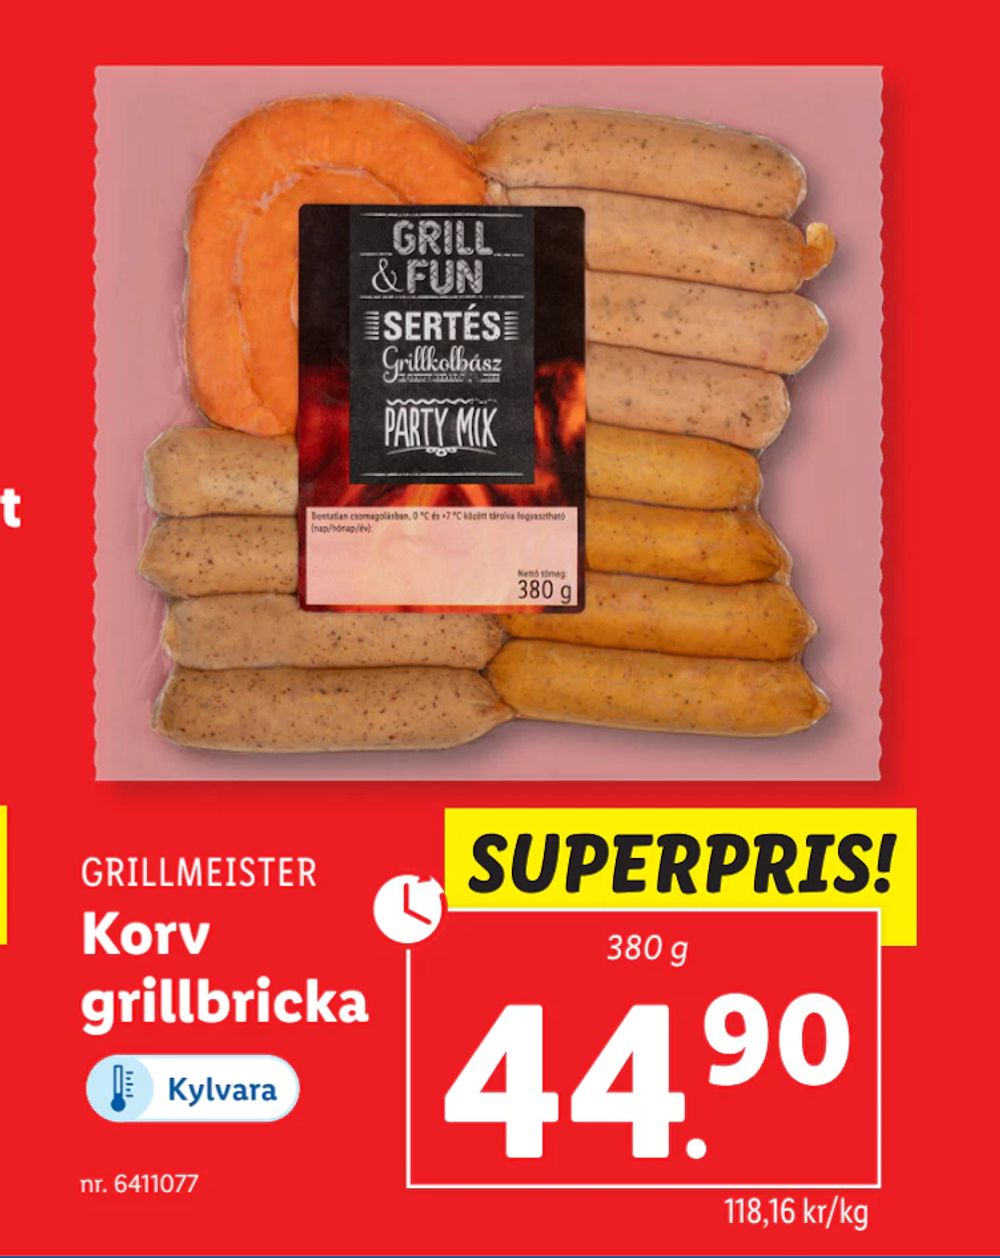 Erbjudanden på Korv grillbricka från Lidl för 44,90 kr